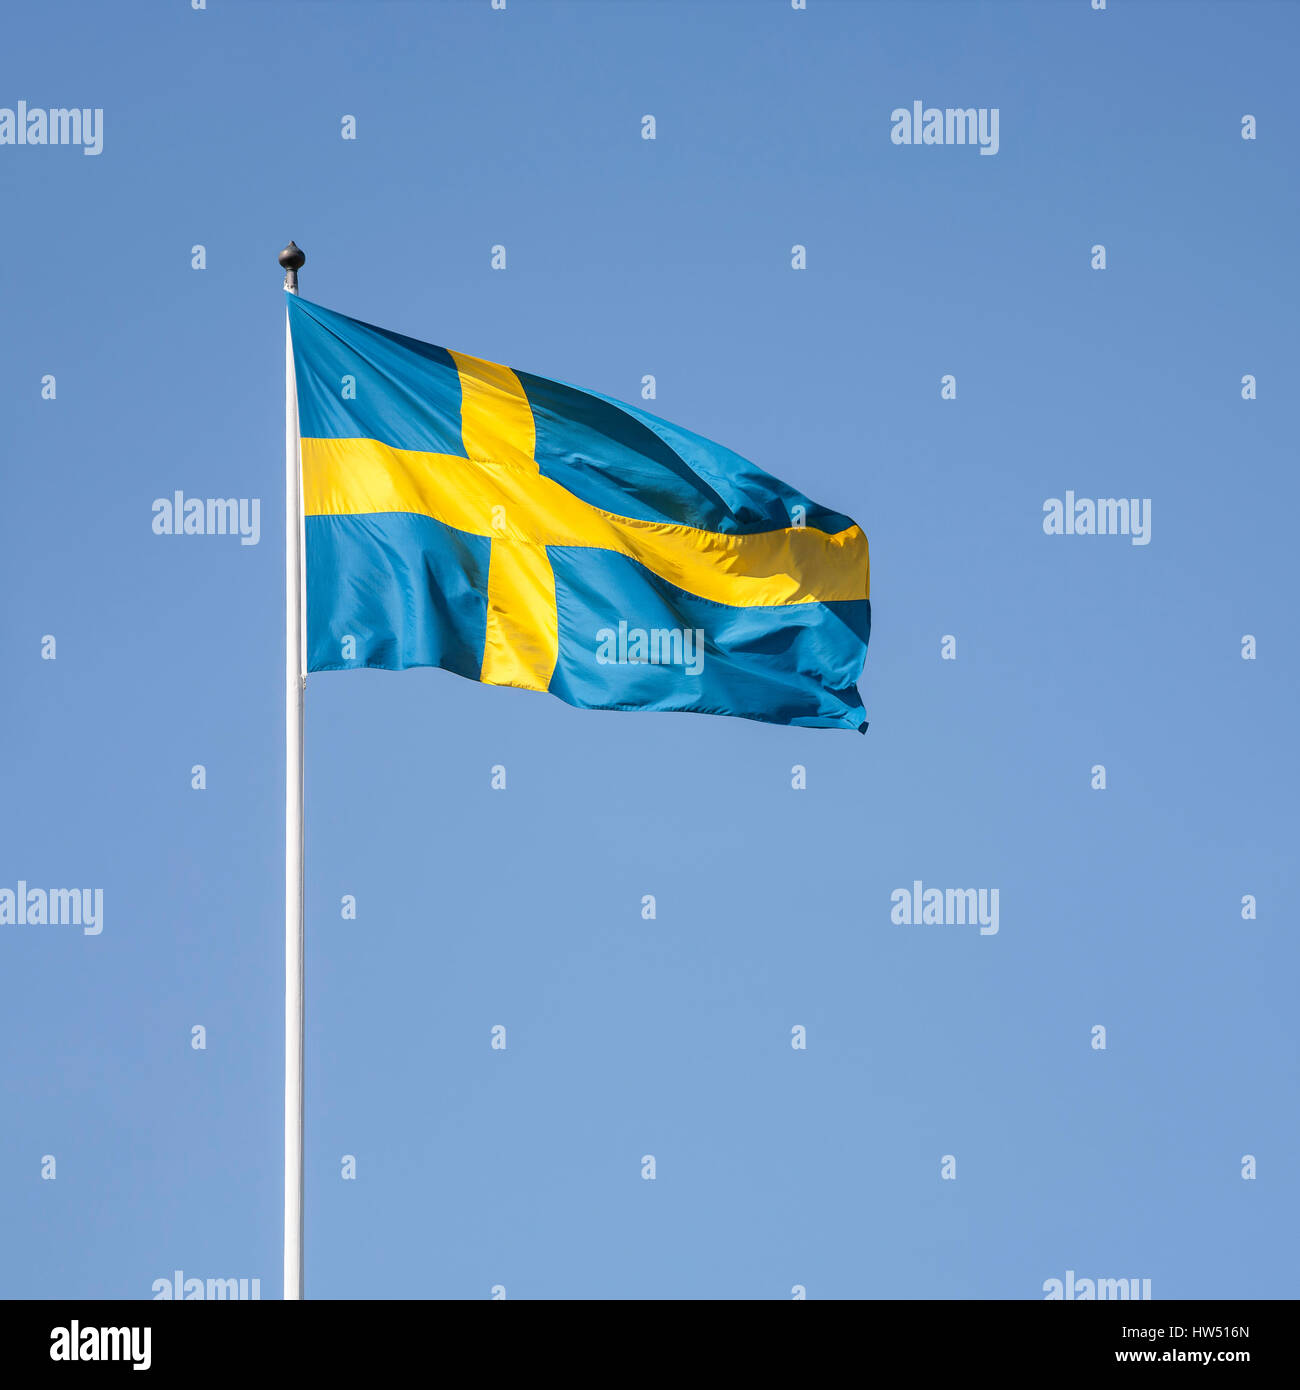 Drapeau suédois contre un ciel bleu clair Banque D'Images